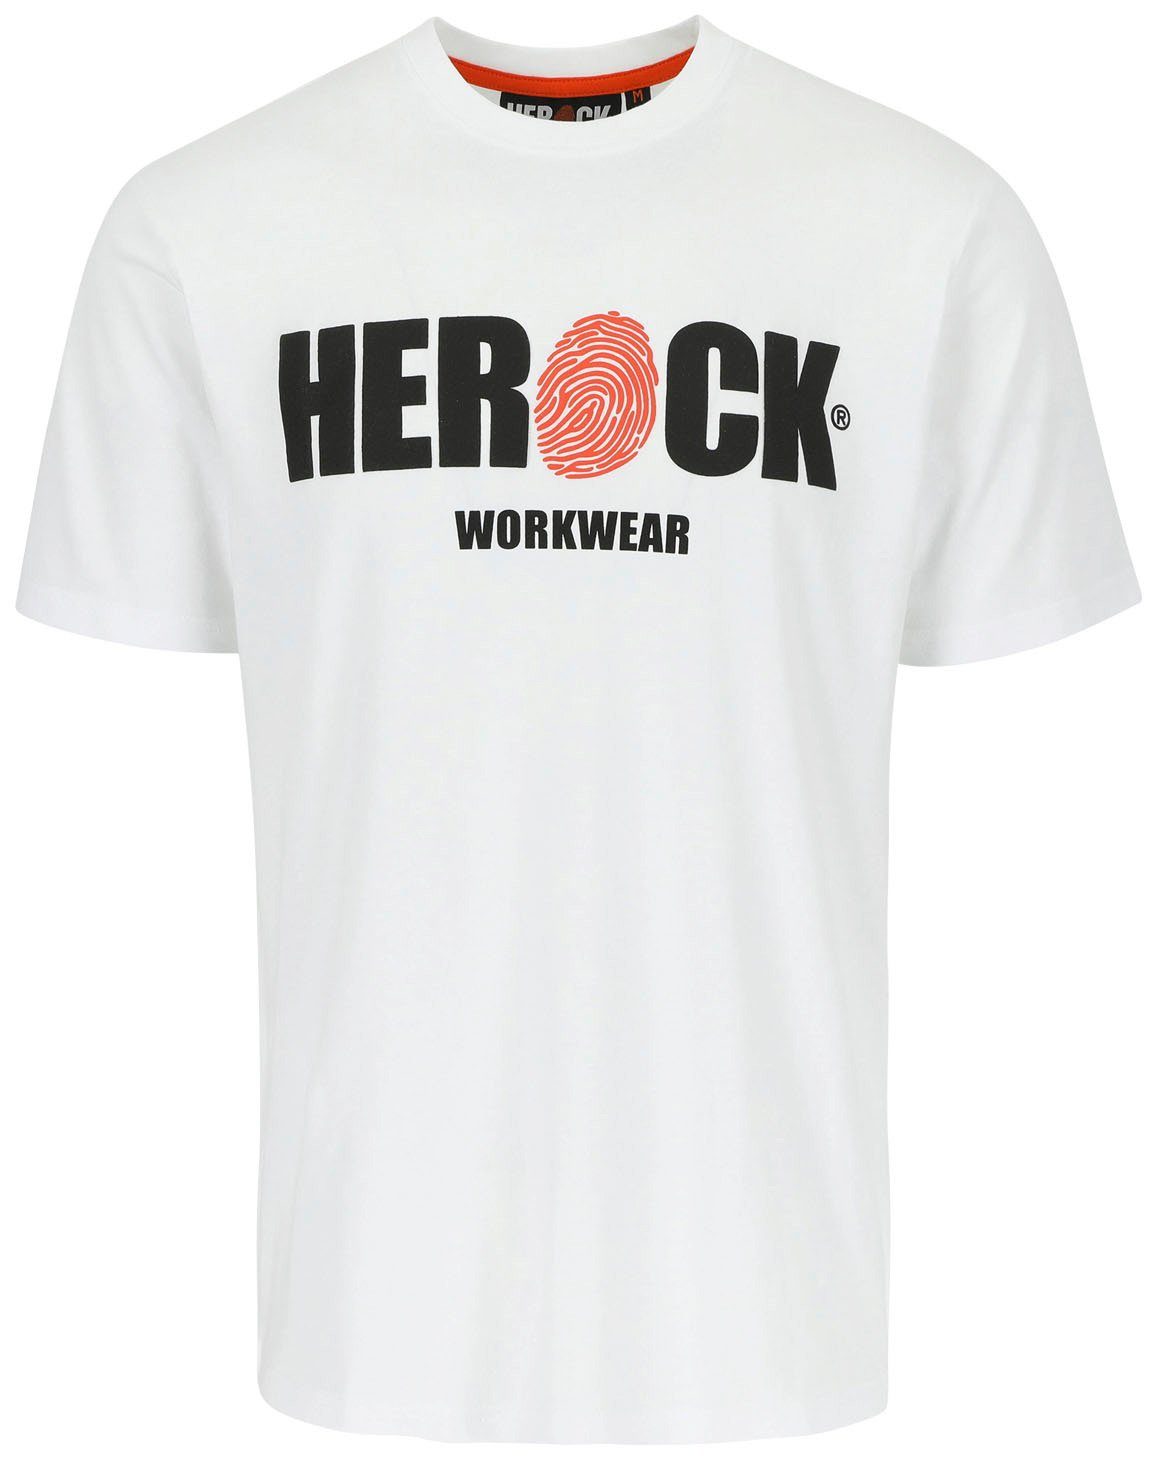 Herock T-Shirt ENI Baumwolle, weiß angenehmes Rundhals, Herock®-Aufdruck, Tragegefühl mit